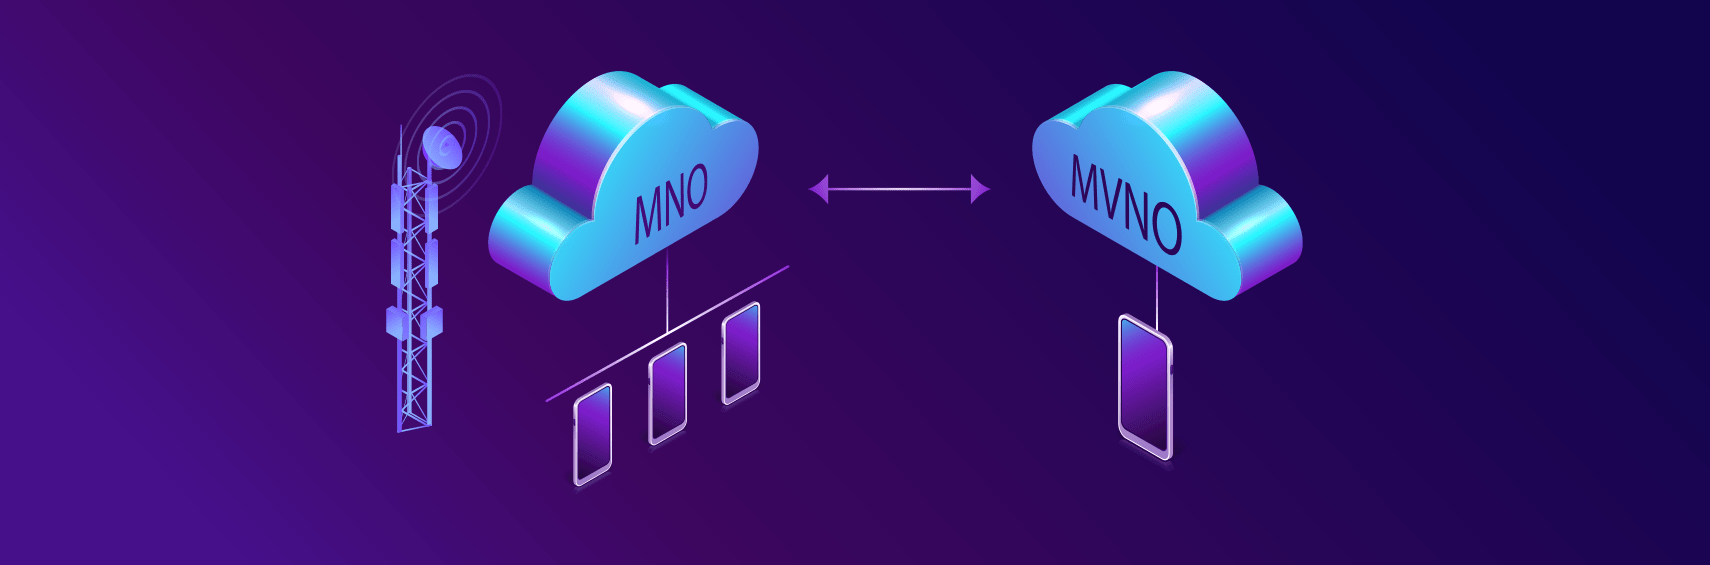 Billing system for MVNO/MVNE